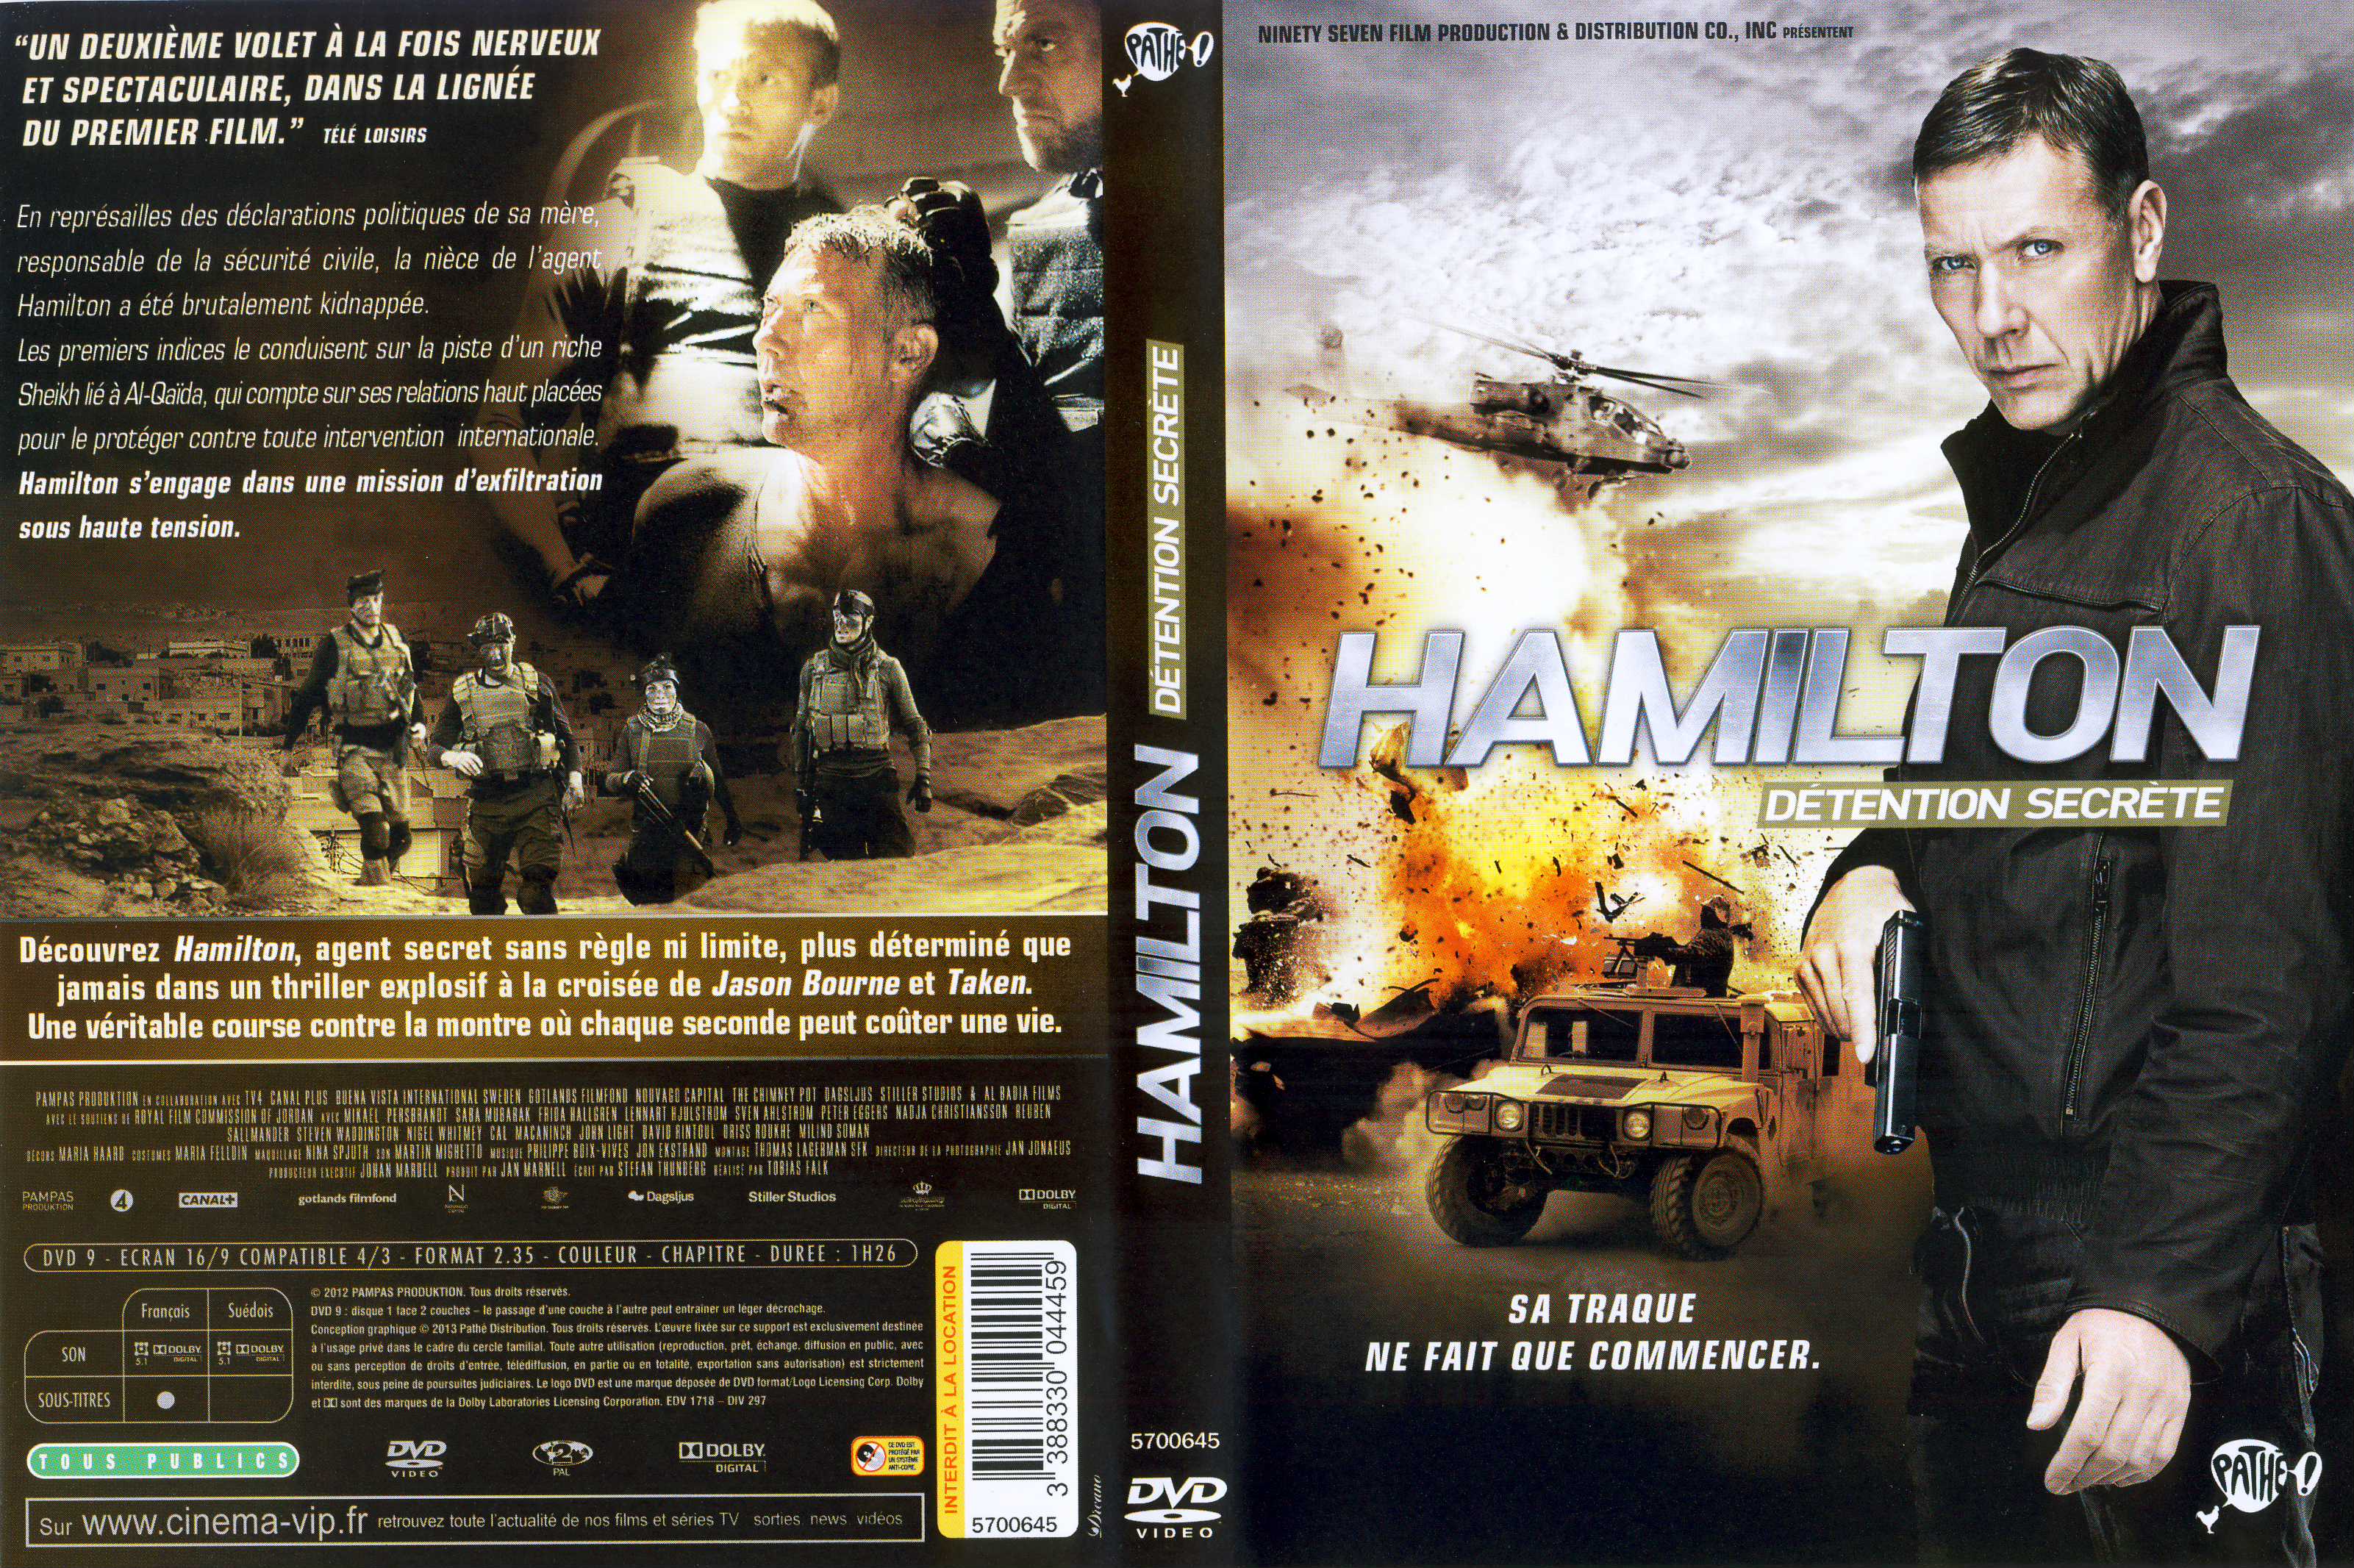 Jaquette DVD Hamilton - Dtention secrte